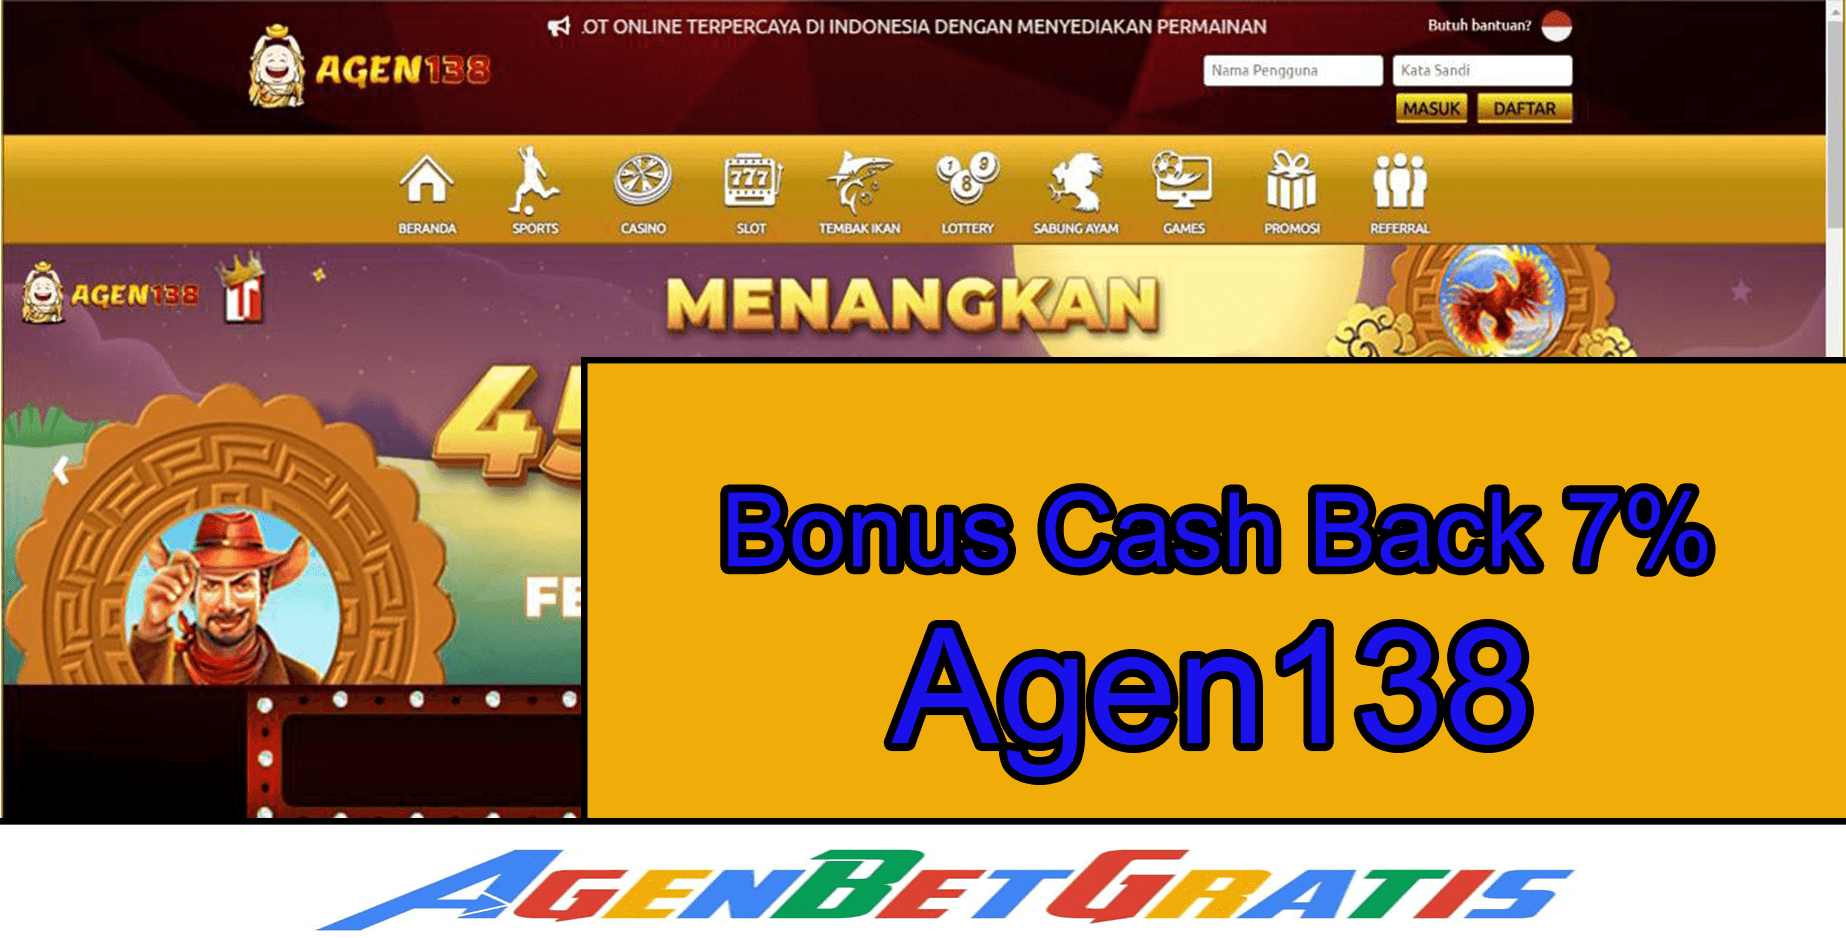 AGEN138 - Bonus Cash Back 7%